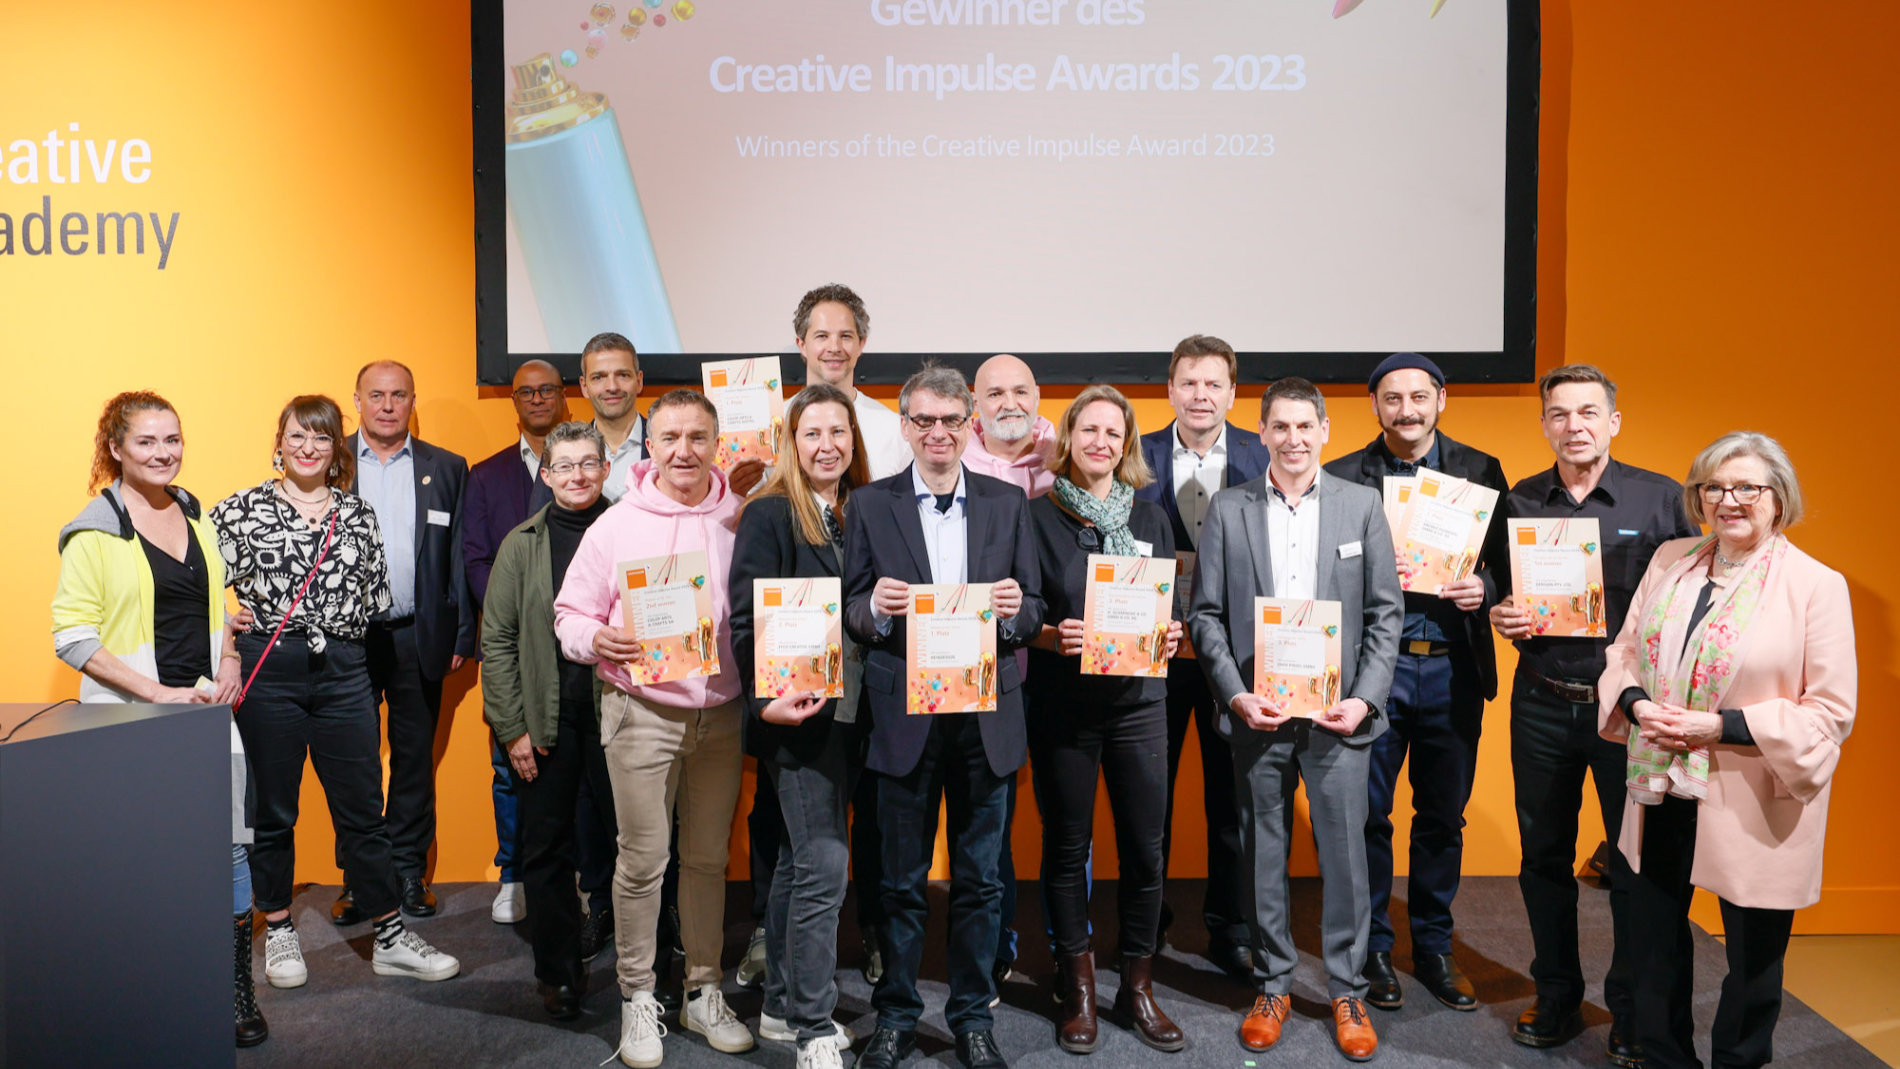 Creative Impulse Award winners 2023